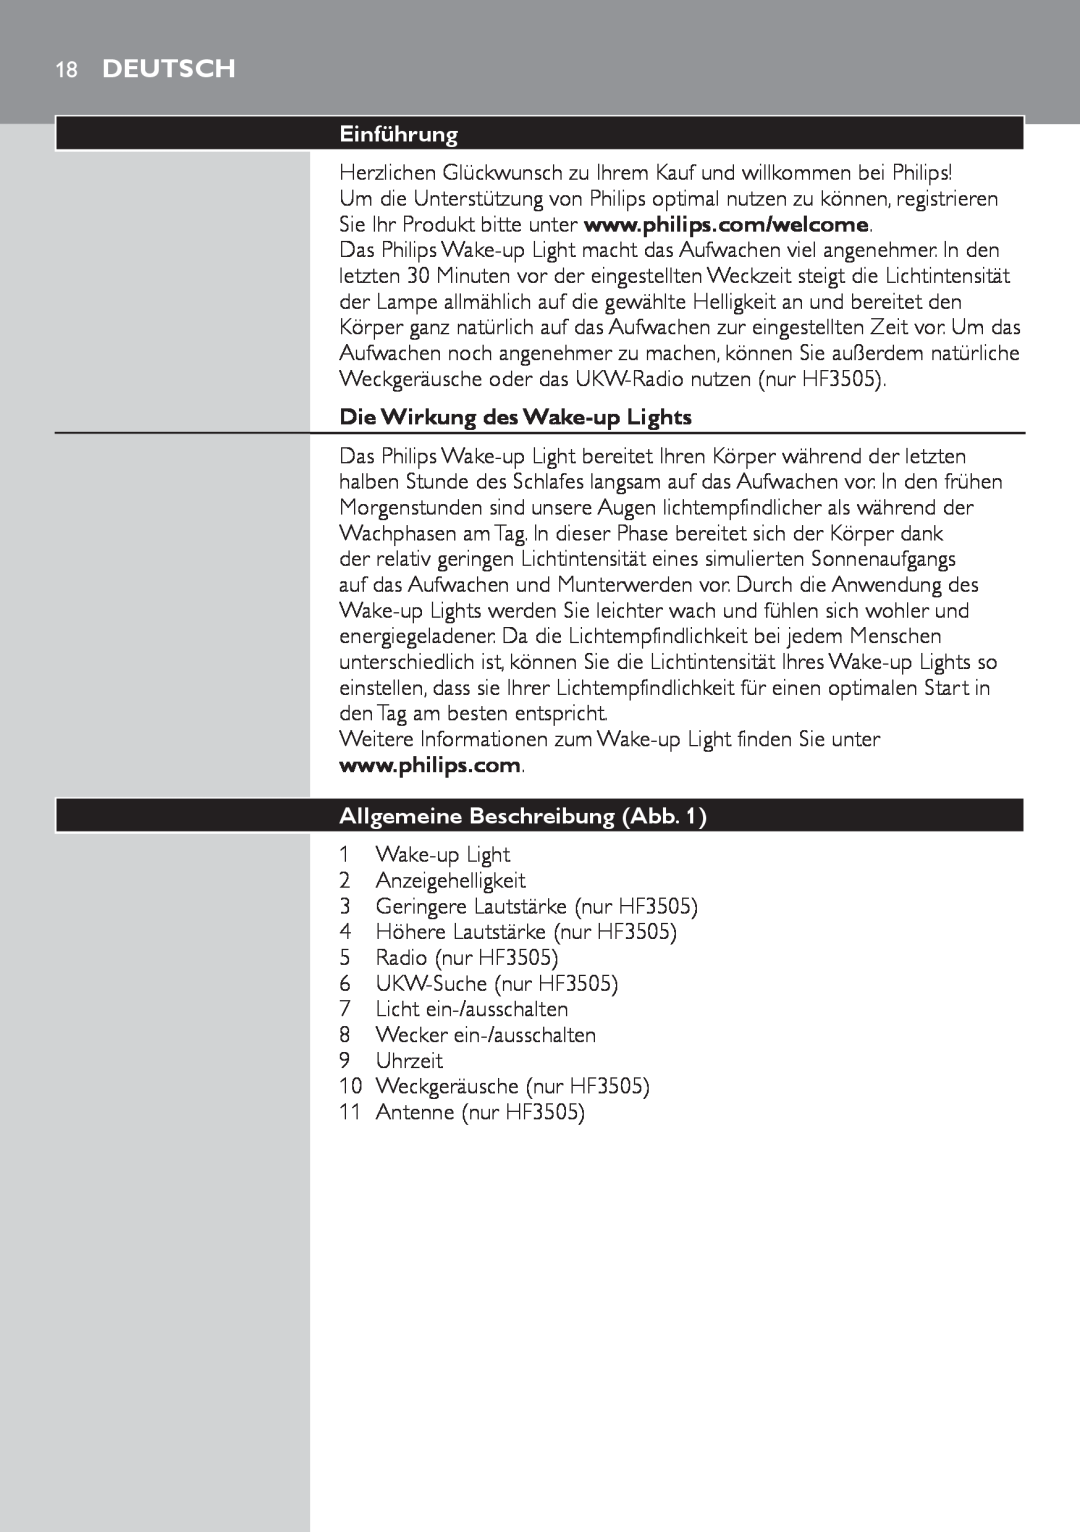 Philips HF3505, HF3500 manual Deutsch, Einführung, Die Wirkung des Wake-up Lights, Allgemeine Beschreibung Abb. 1 